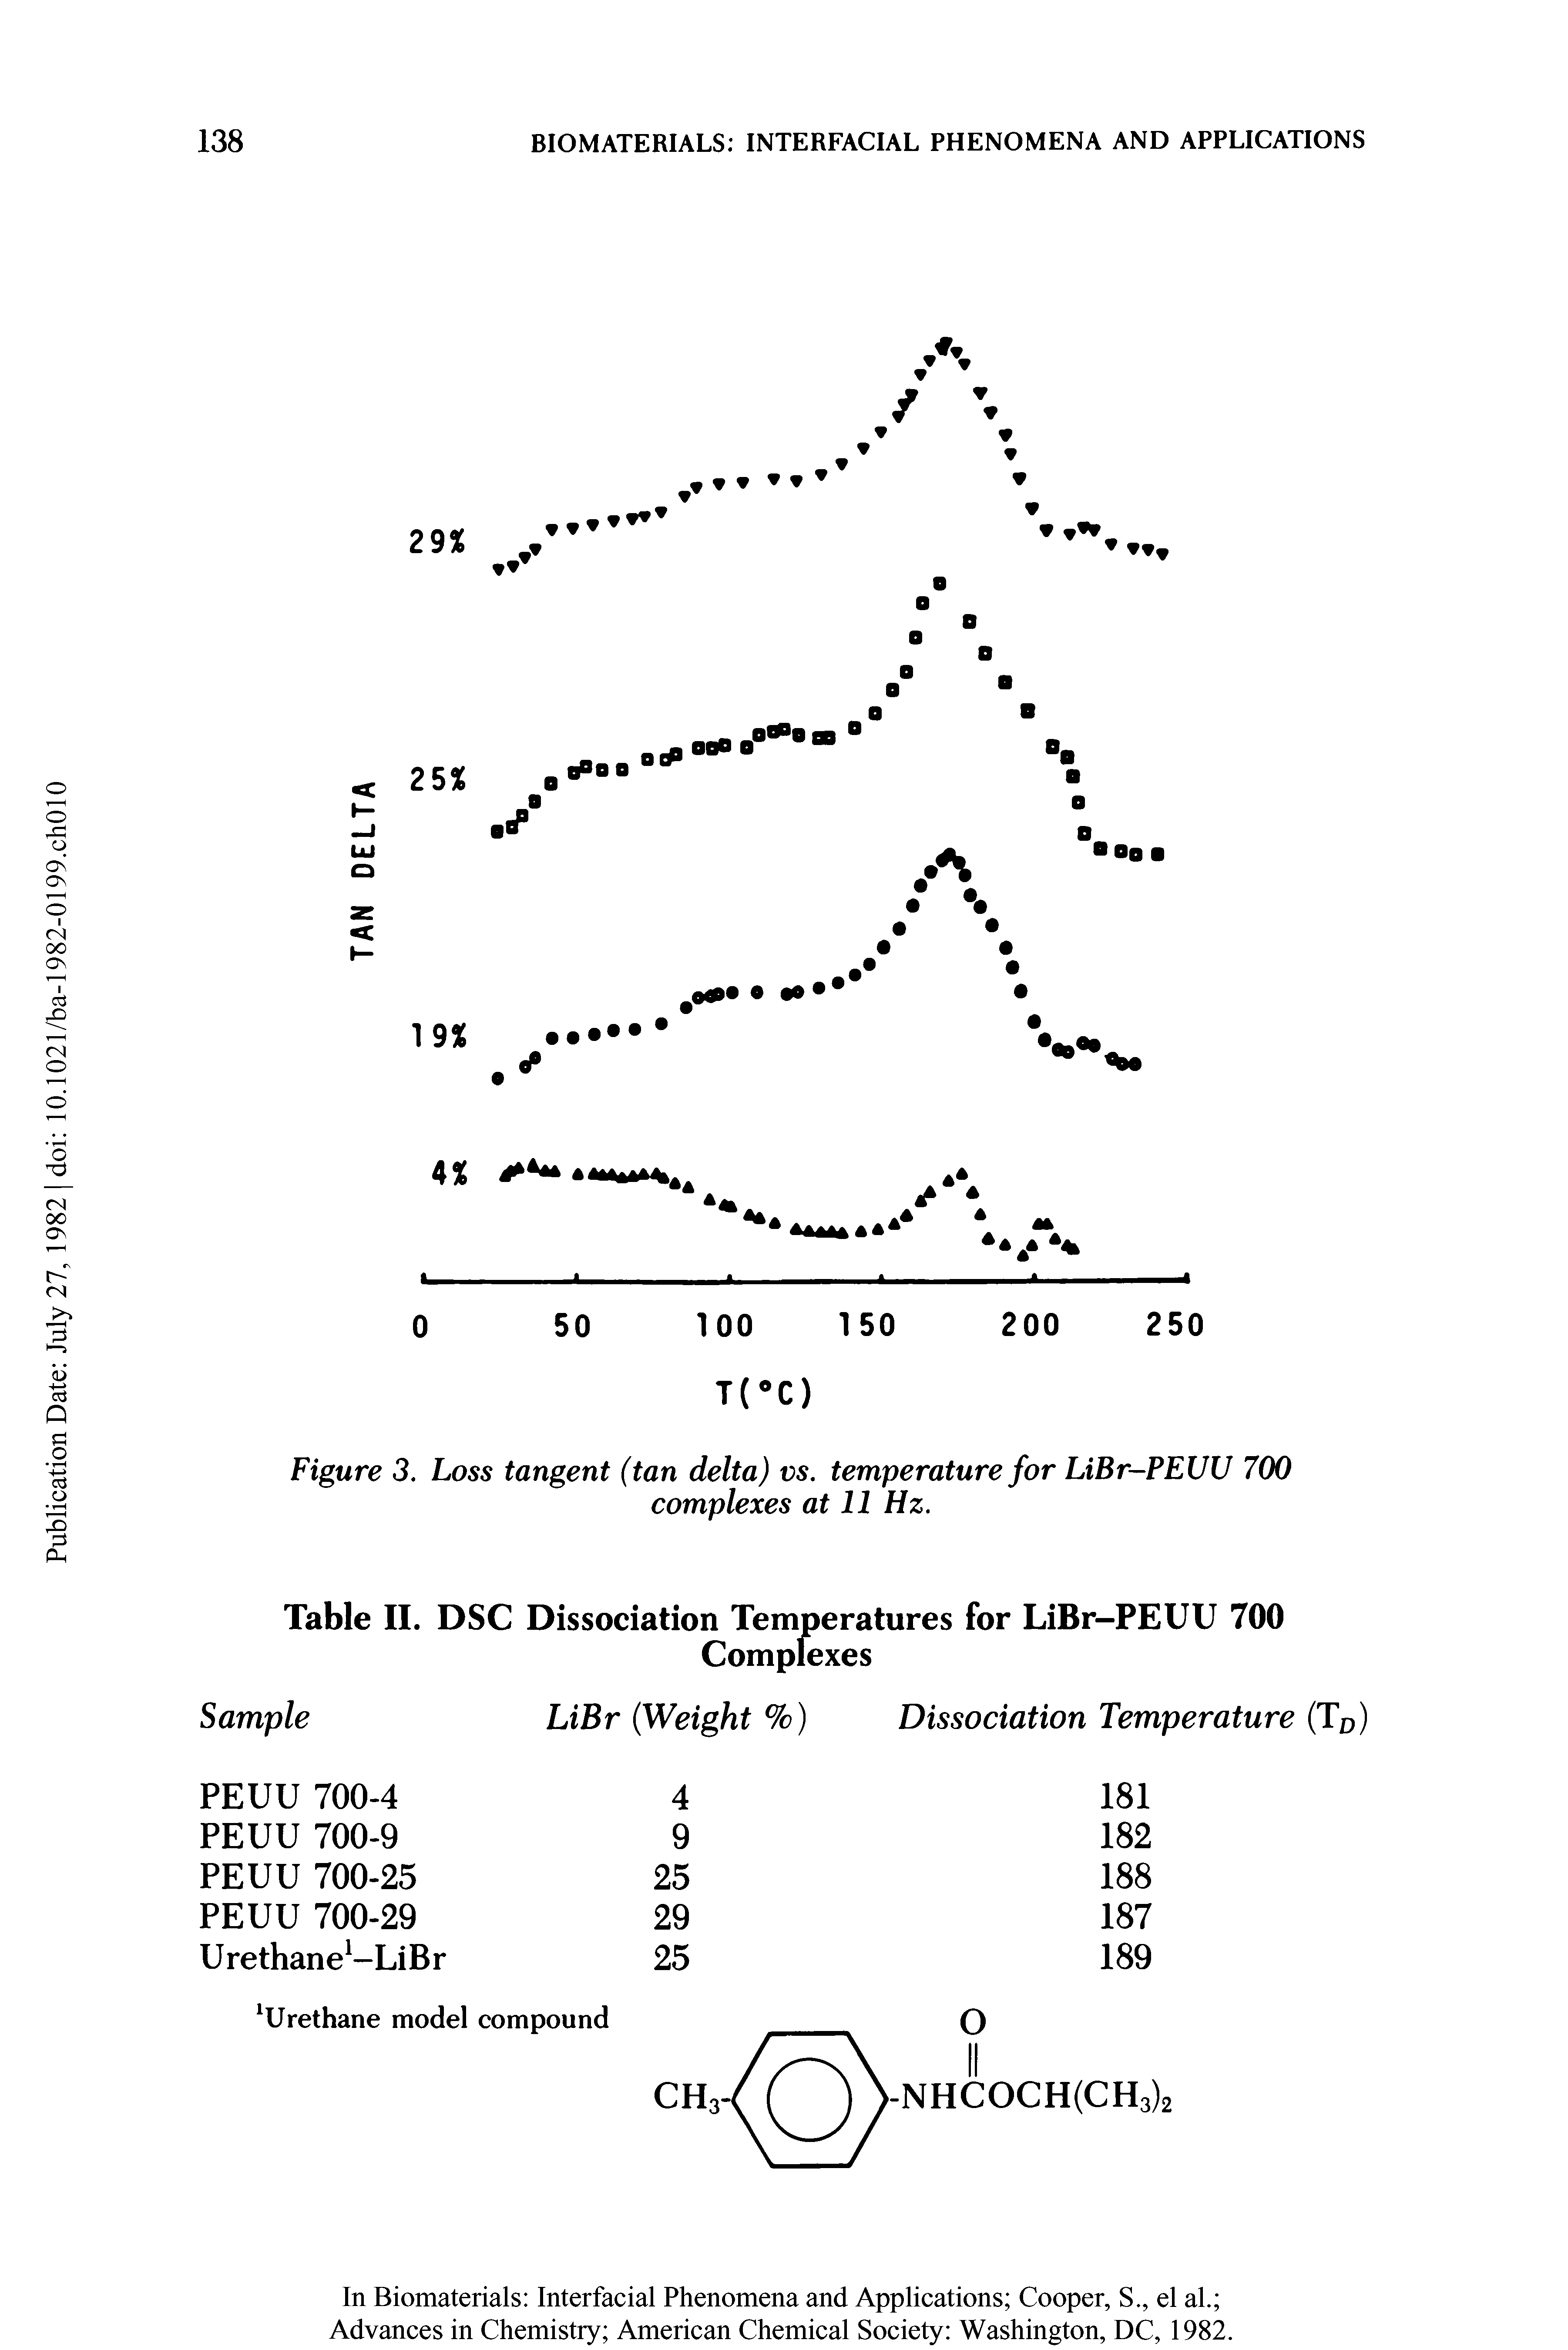 Figure 3. Loss tangent (tan delta) vs. temperature for LiBr-PEUU 700 complexes at 11 Hz.